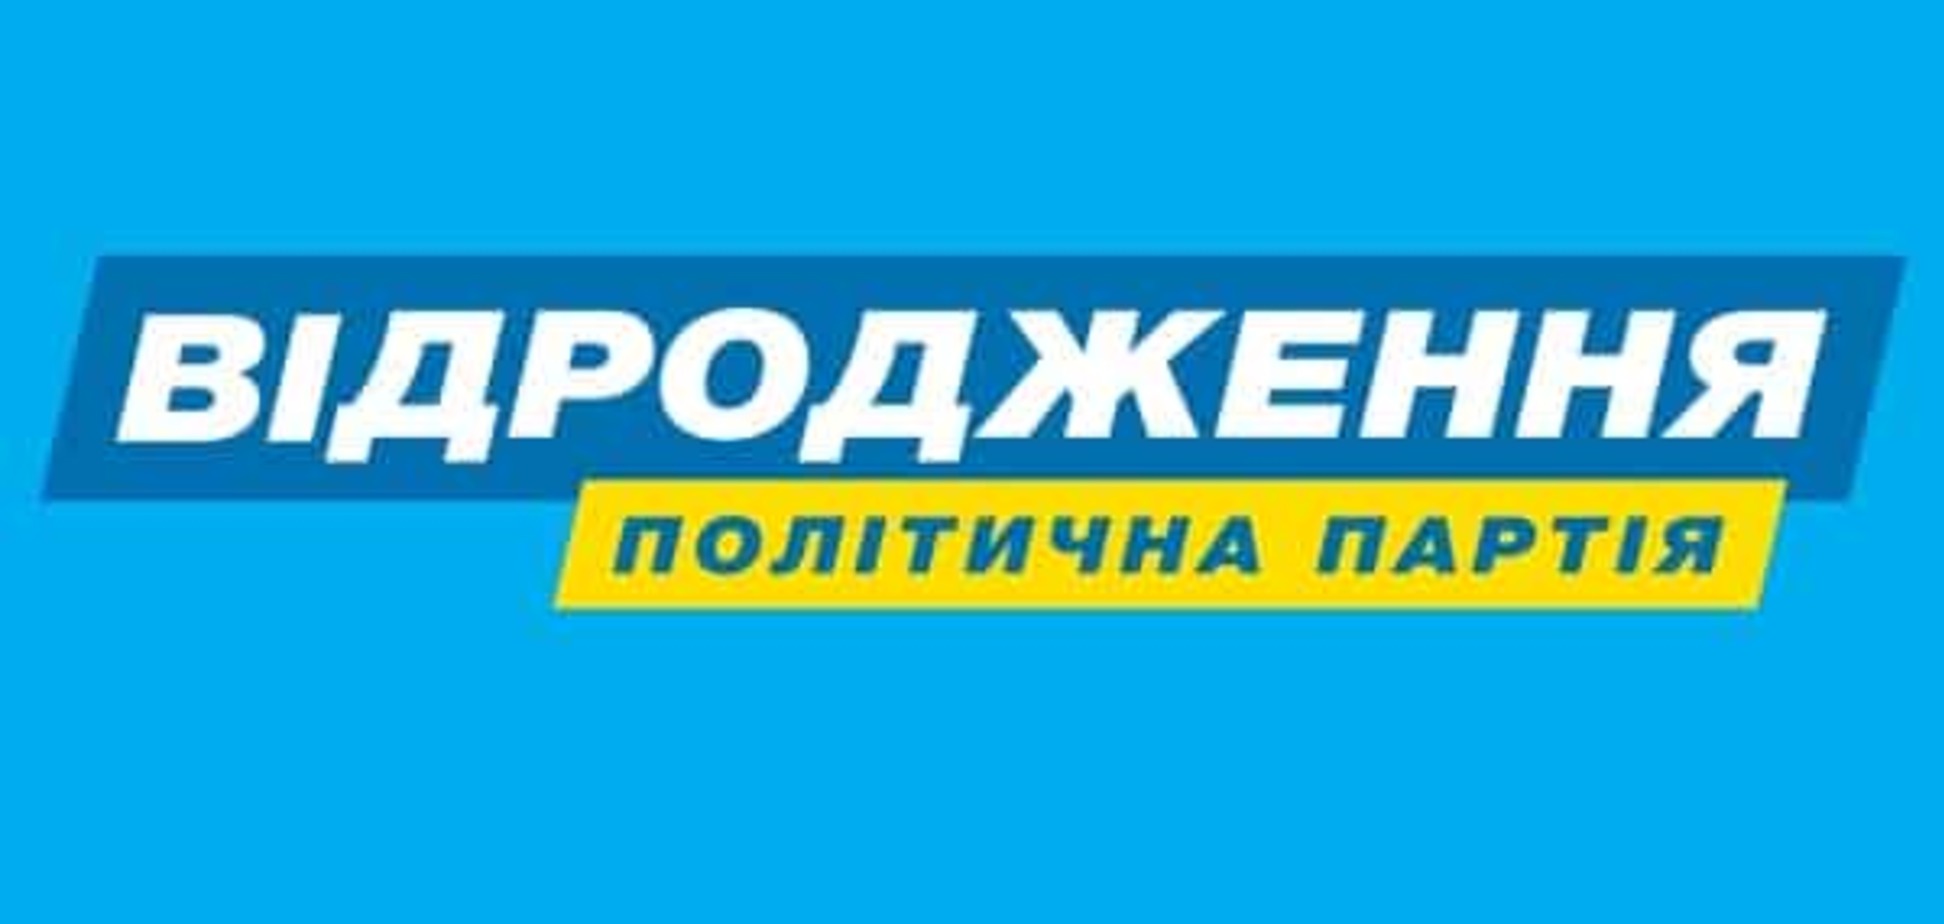 Дніпропетровський виборчком проведе жеребкування партій без 'Відродження'